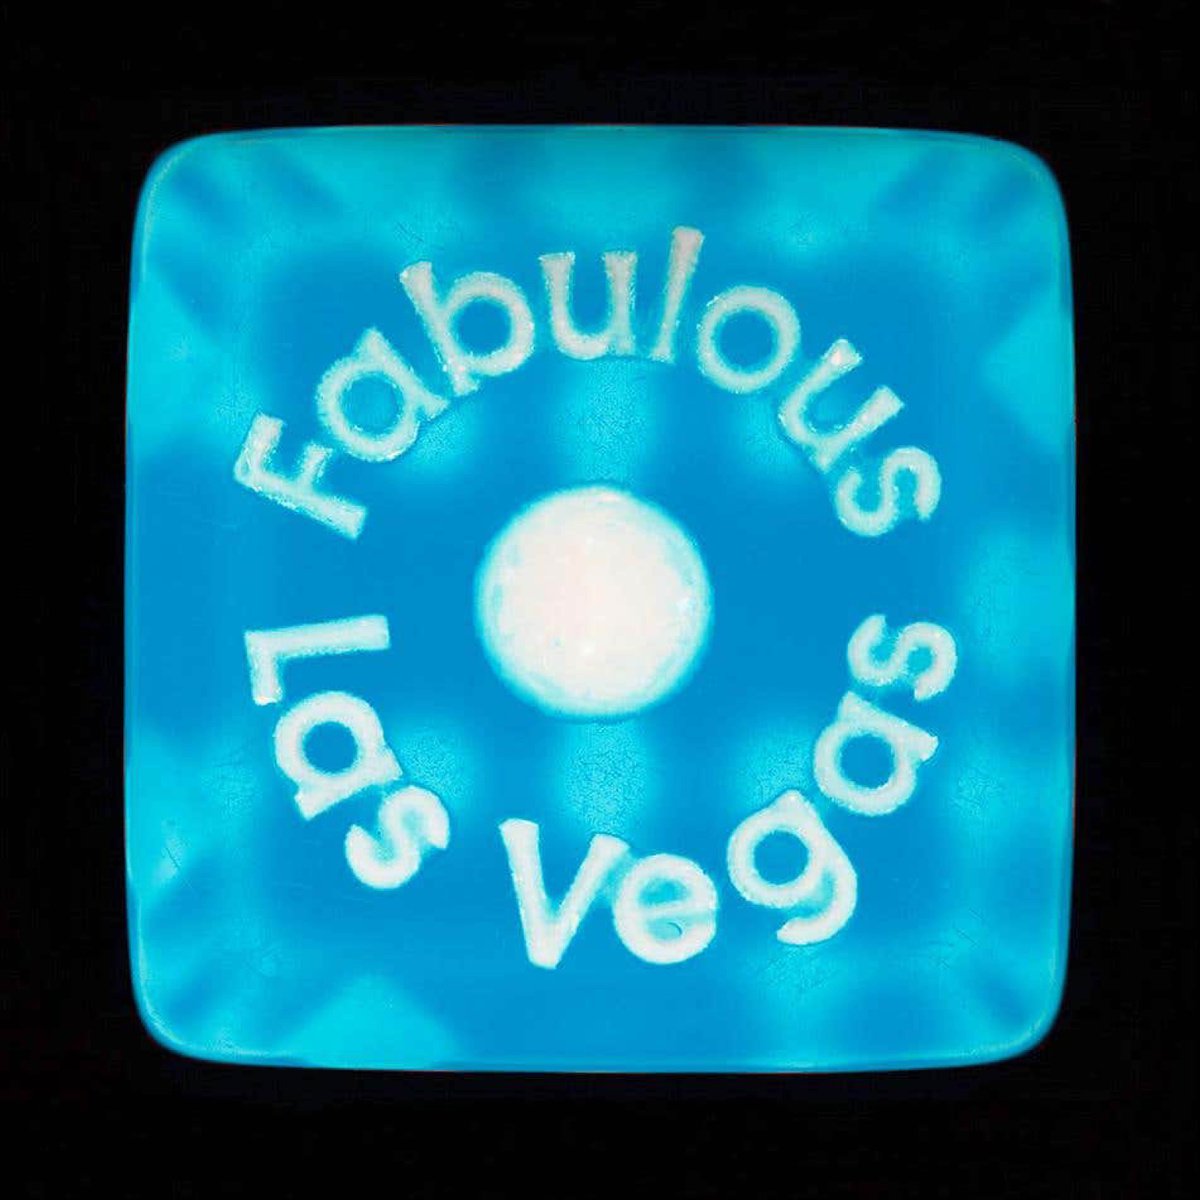 Heidler and Heeps Dice Series, One Fabulous Las Vegas by Richard Heeps